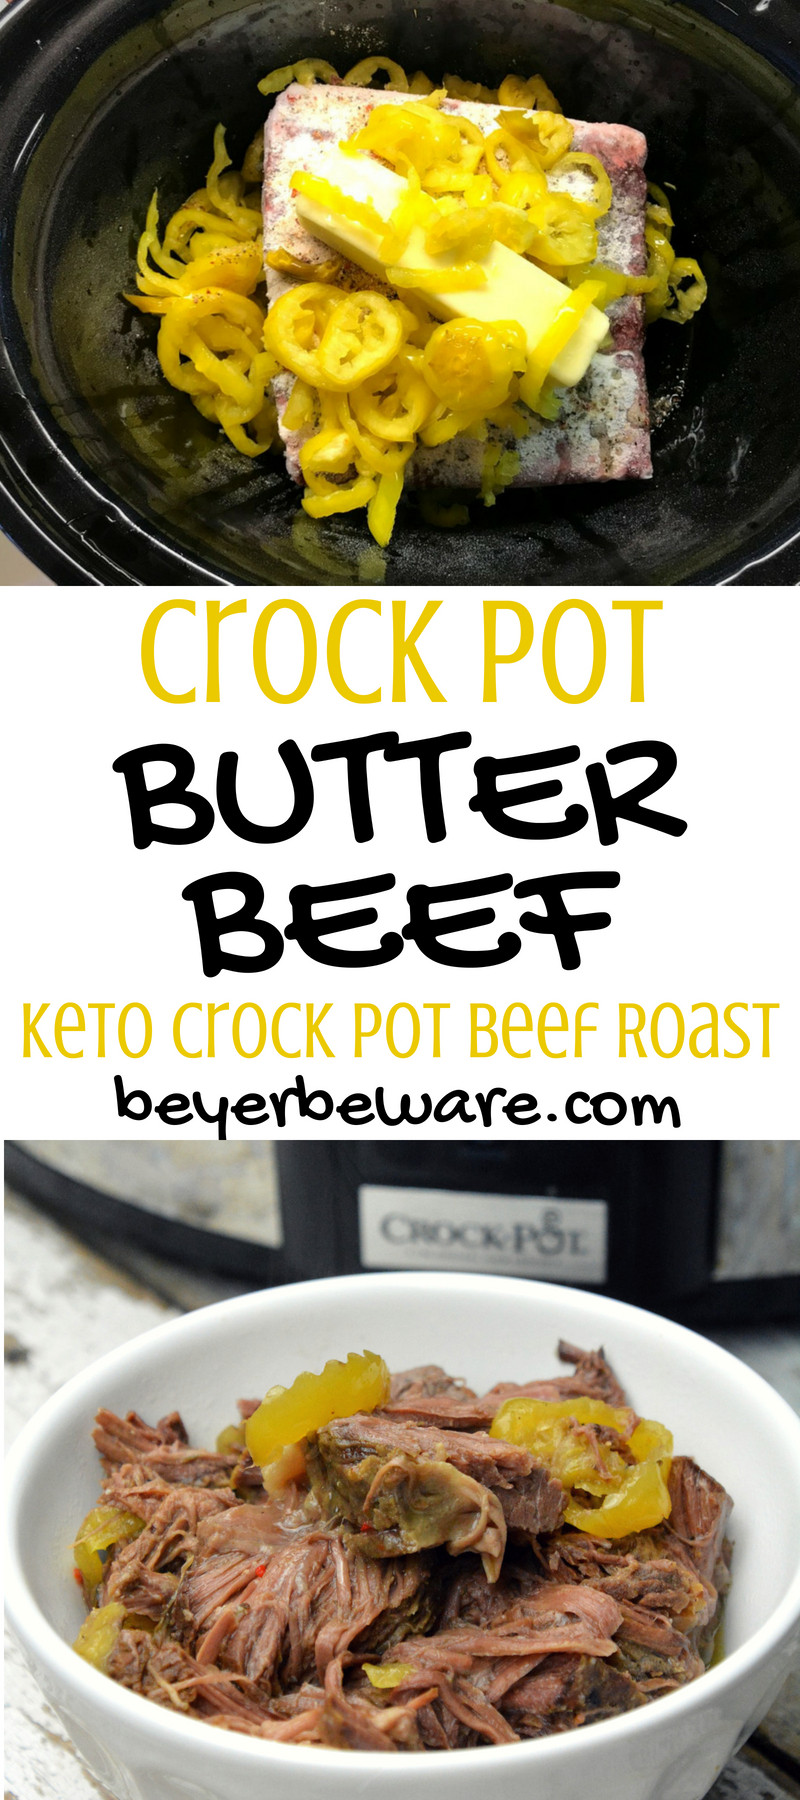 Beef Keto Recipes Crock Pot
 Crock Pot Butter Beef Keto Crock Pot Beef Roast Beyer